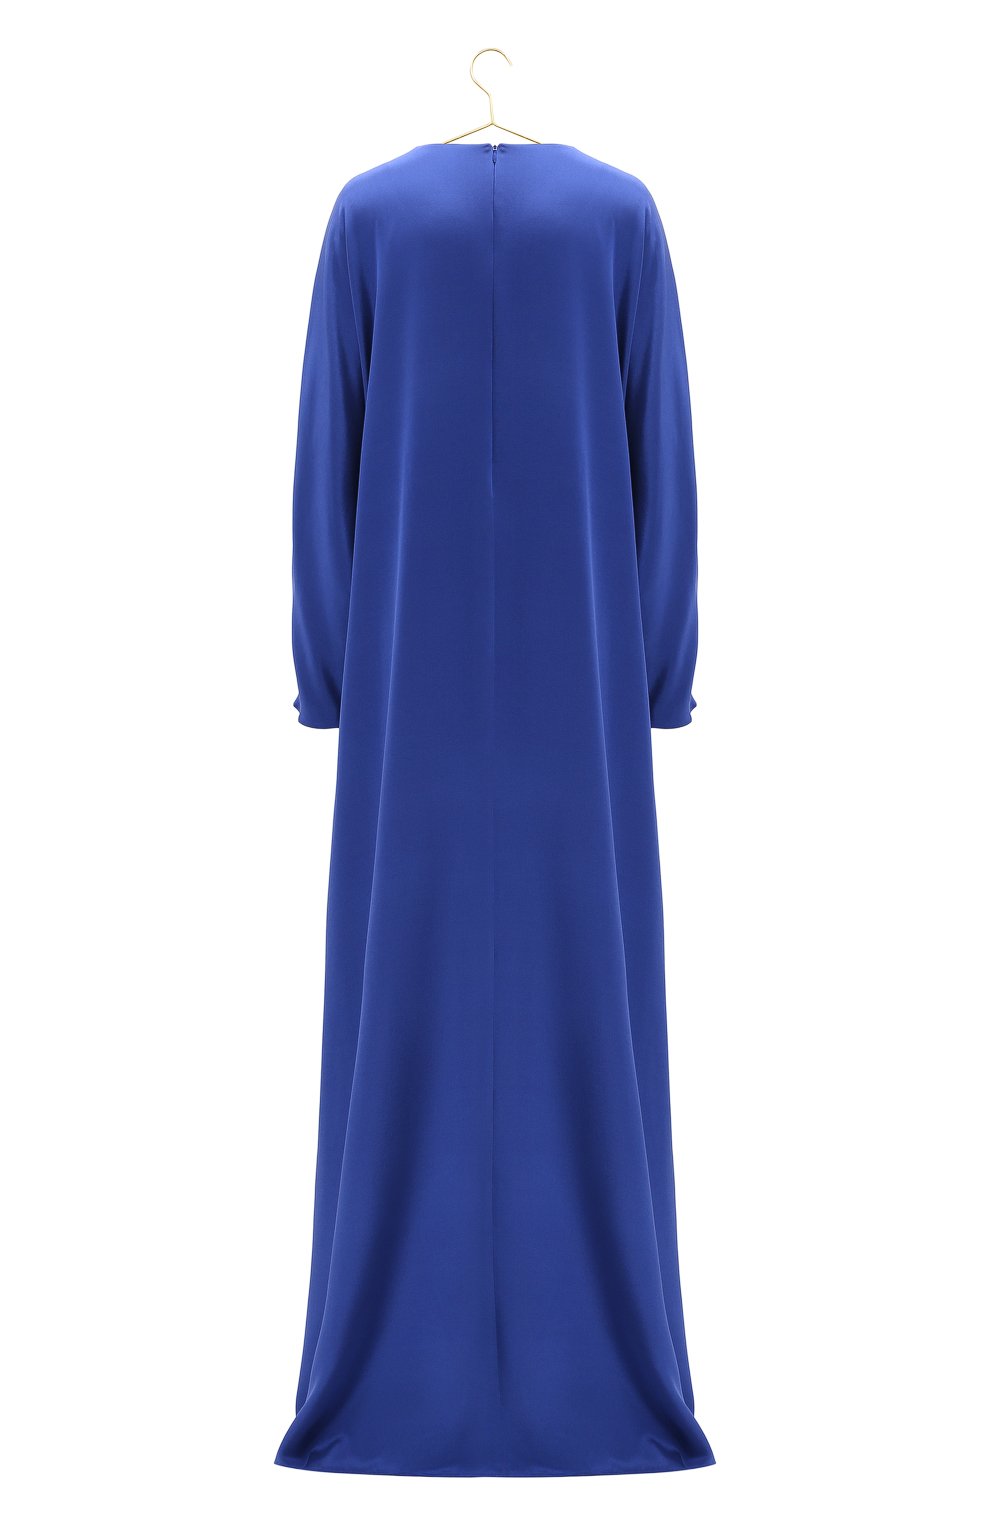 Шелковое платье | St. John | Синий - 2